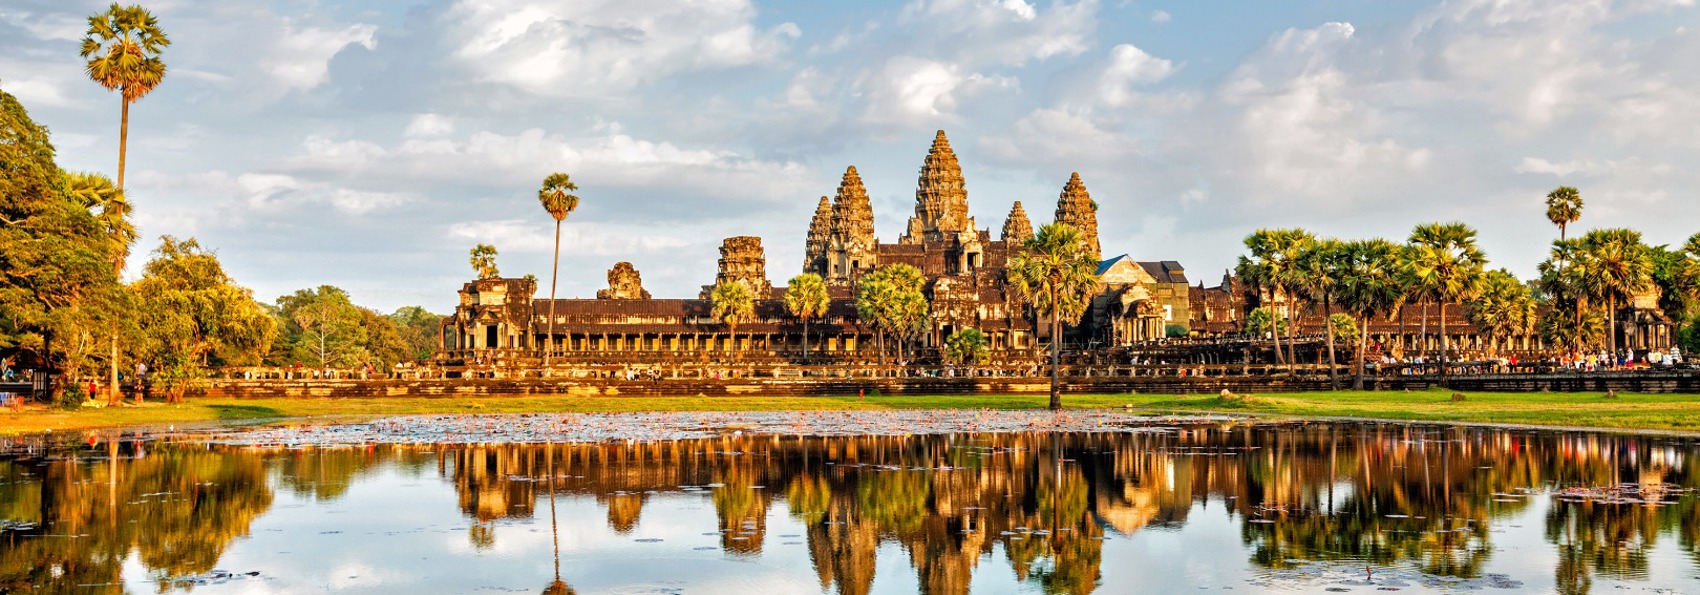 cambodia - siem reap_angkor wat tempel_21